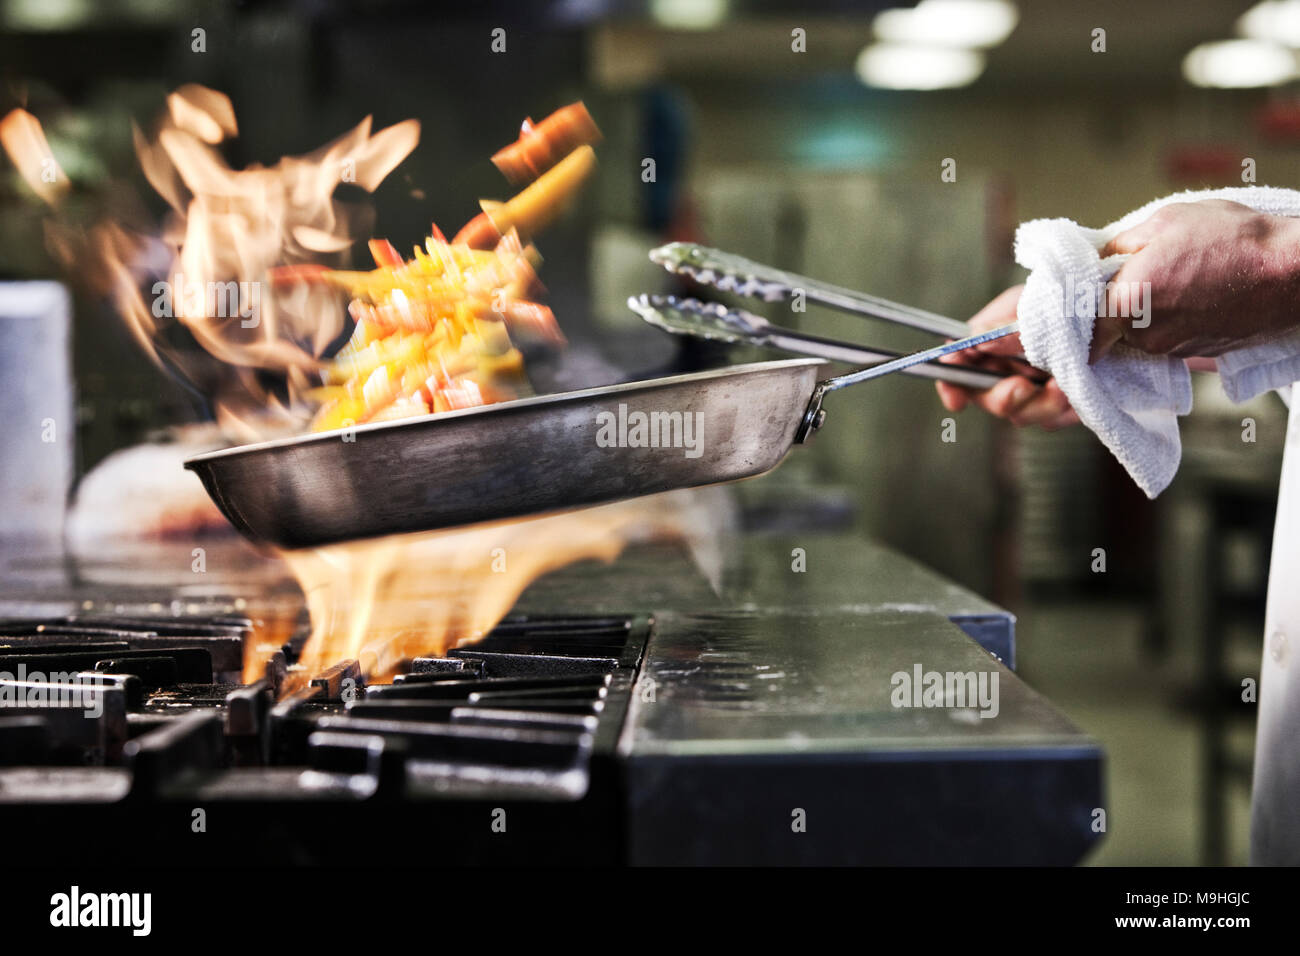 Close-up of chef's hands holding une sauteuse pour cuire les aliments, flambeing contenu. Les flammes s'élevant de la casserole. Banque D'Images